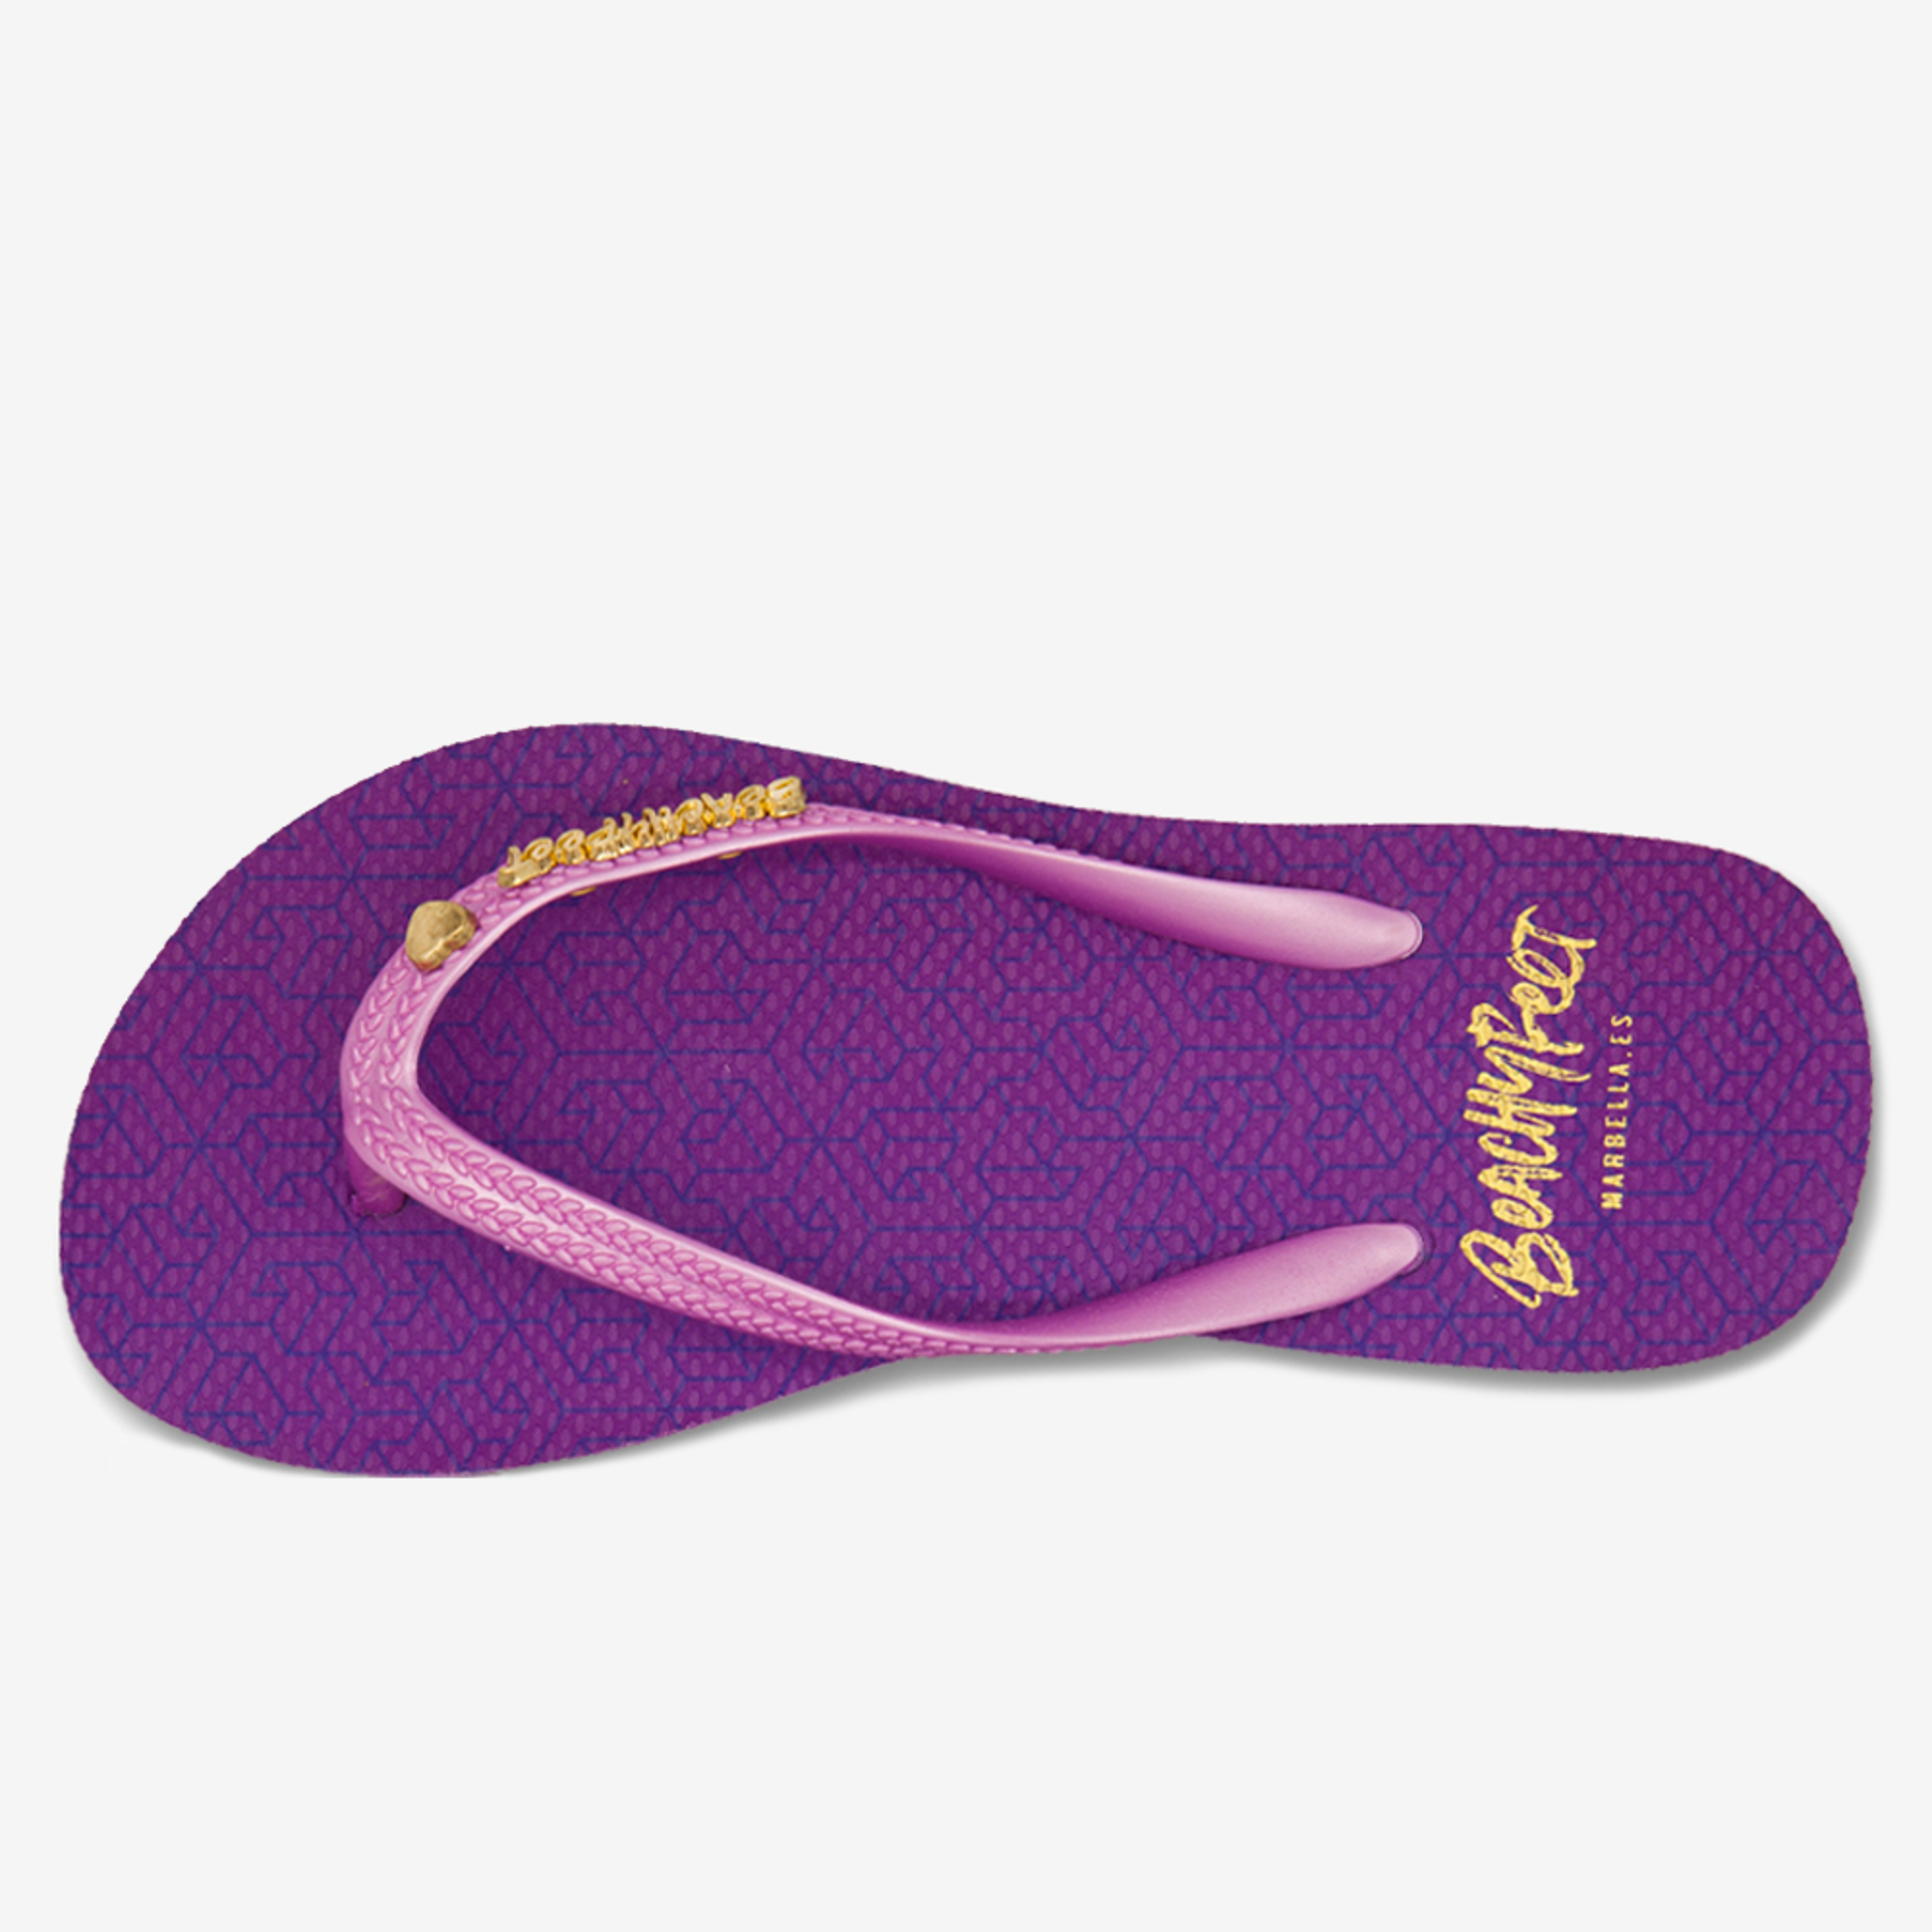 Chinelos De Mulher Beachyfeet Modelo Pasion Purpura - purpura - 